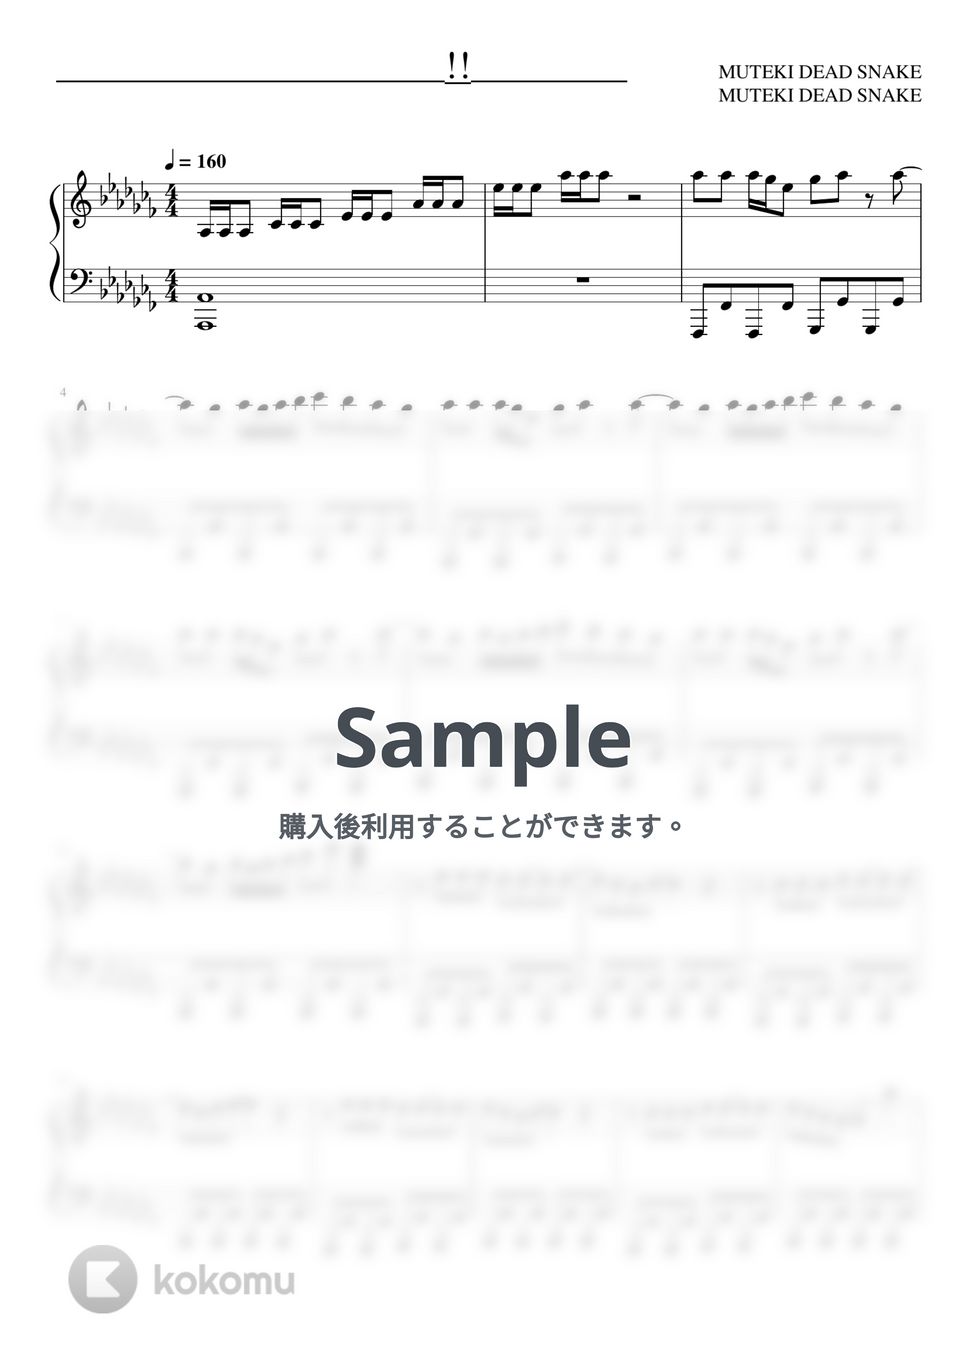 すとぷり - パンピじゃないのよッ!! (ピアノソロ譜) by 萌や氏